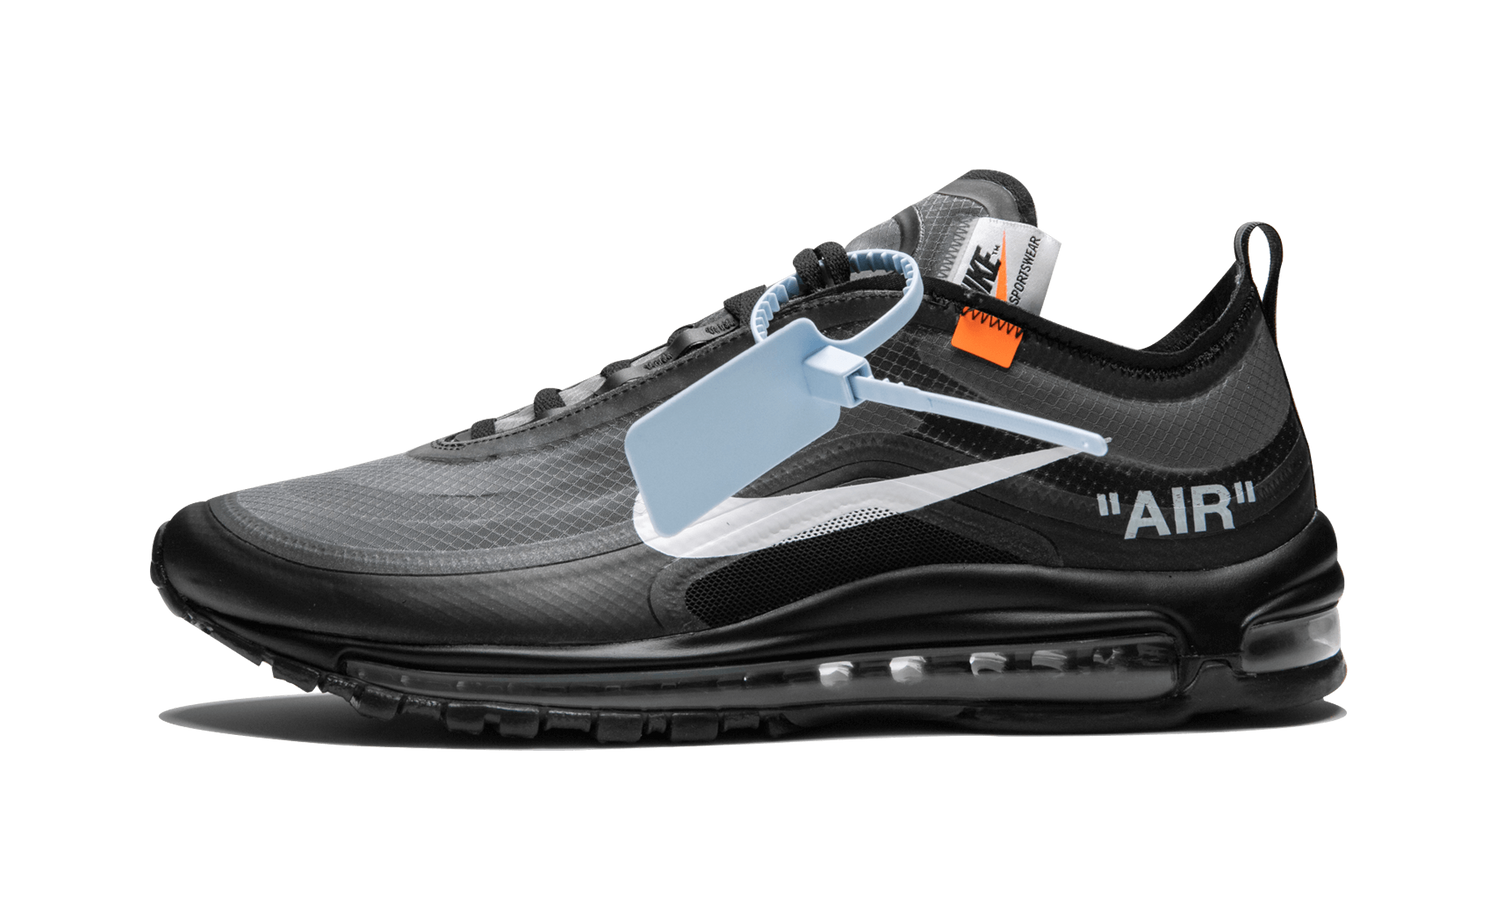 The 10 : Nike Air Max 97 OG “OFF-WHITE” - AJ4585 001 | Grailshop